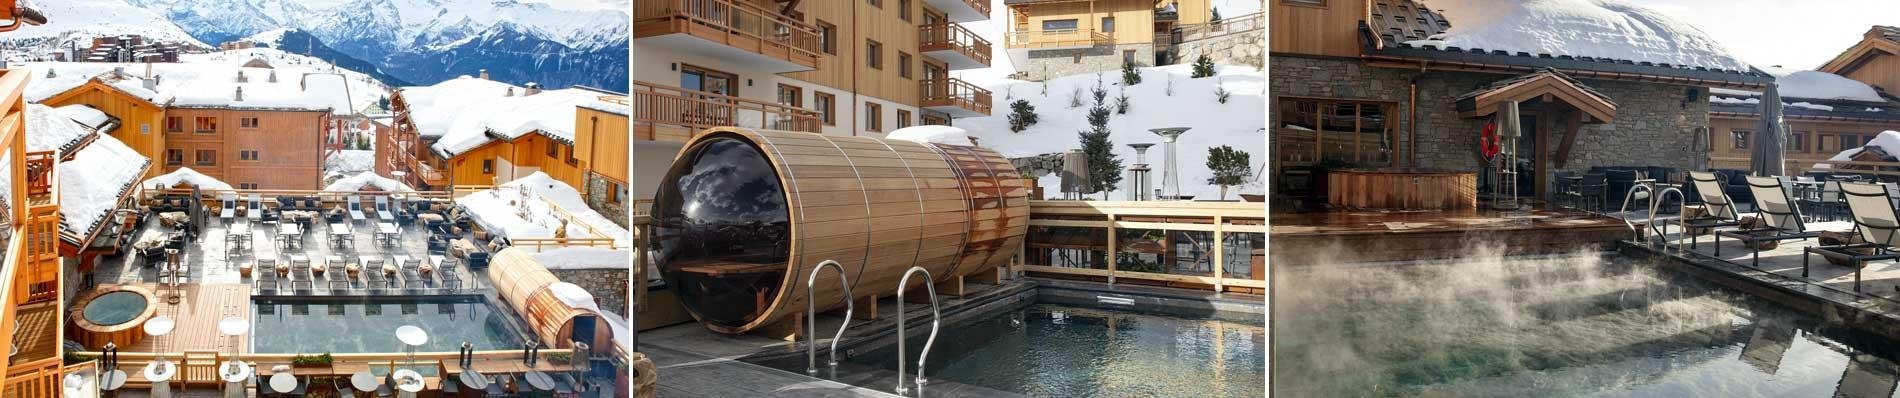 wintersport skivakantie chalets ALPE-D-HUEZ Hotel Les Grandes Rousses